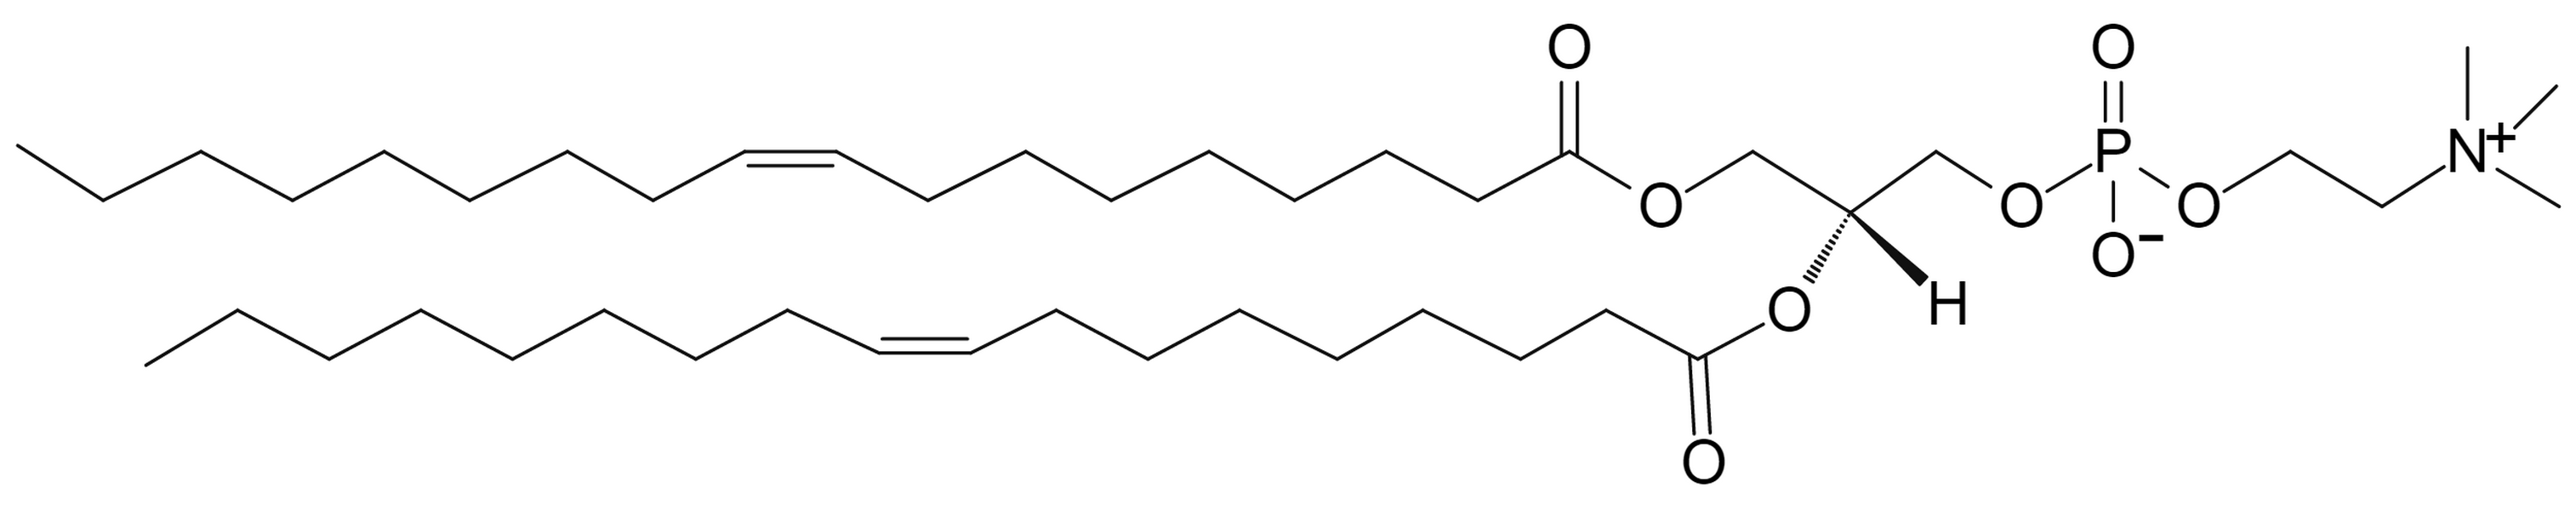 1,2-Dioleoyl-sn-Glycero-3-Phosphocholine